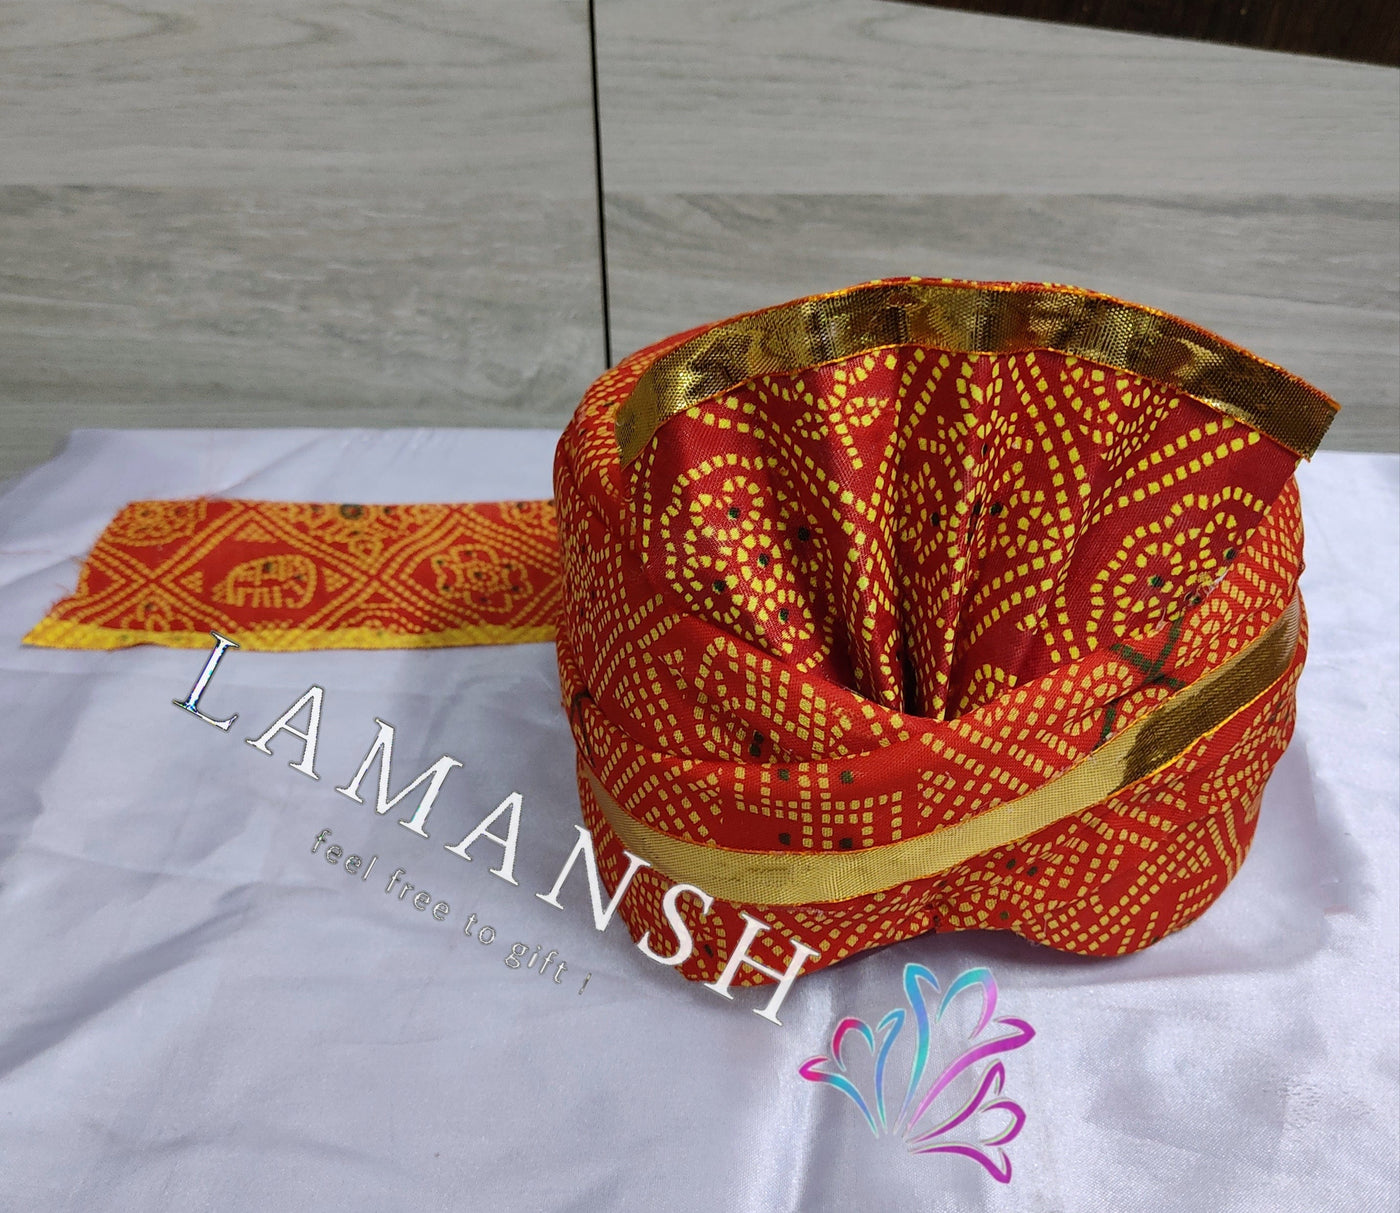 LAMANSH safa pagdi Pack of 20 LAMANSH Pack of 20 Rajasthani Chunri Print Readymade Safa Pagdi Turban for Guests & Barati